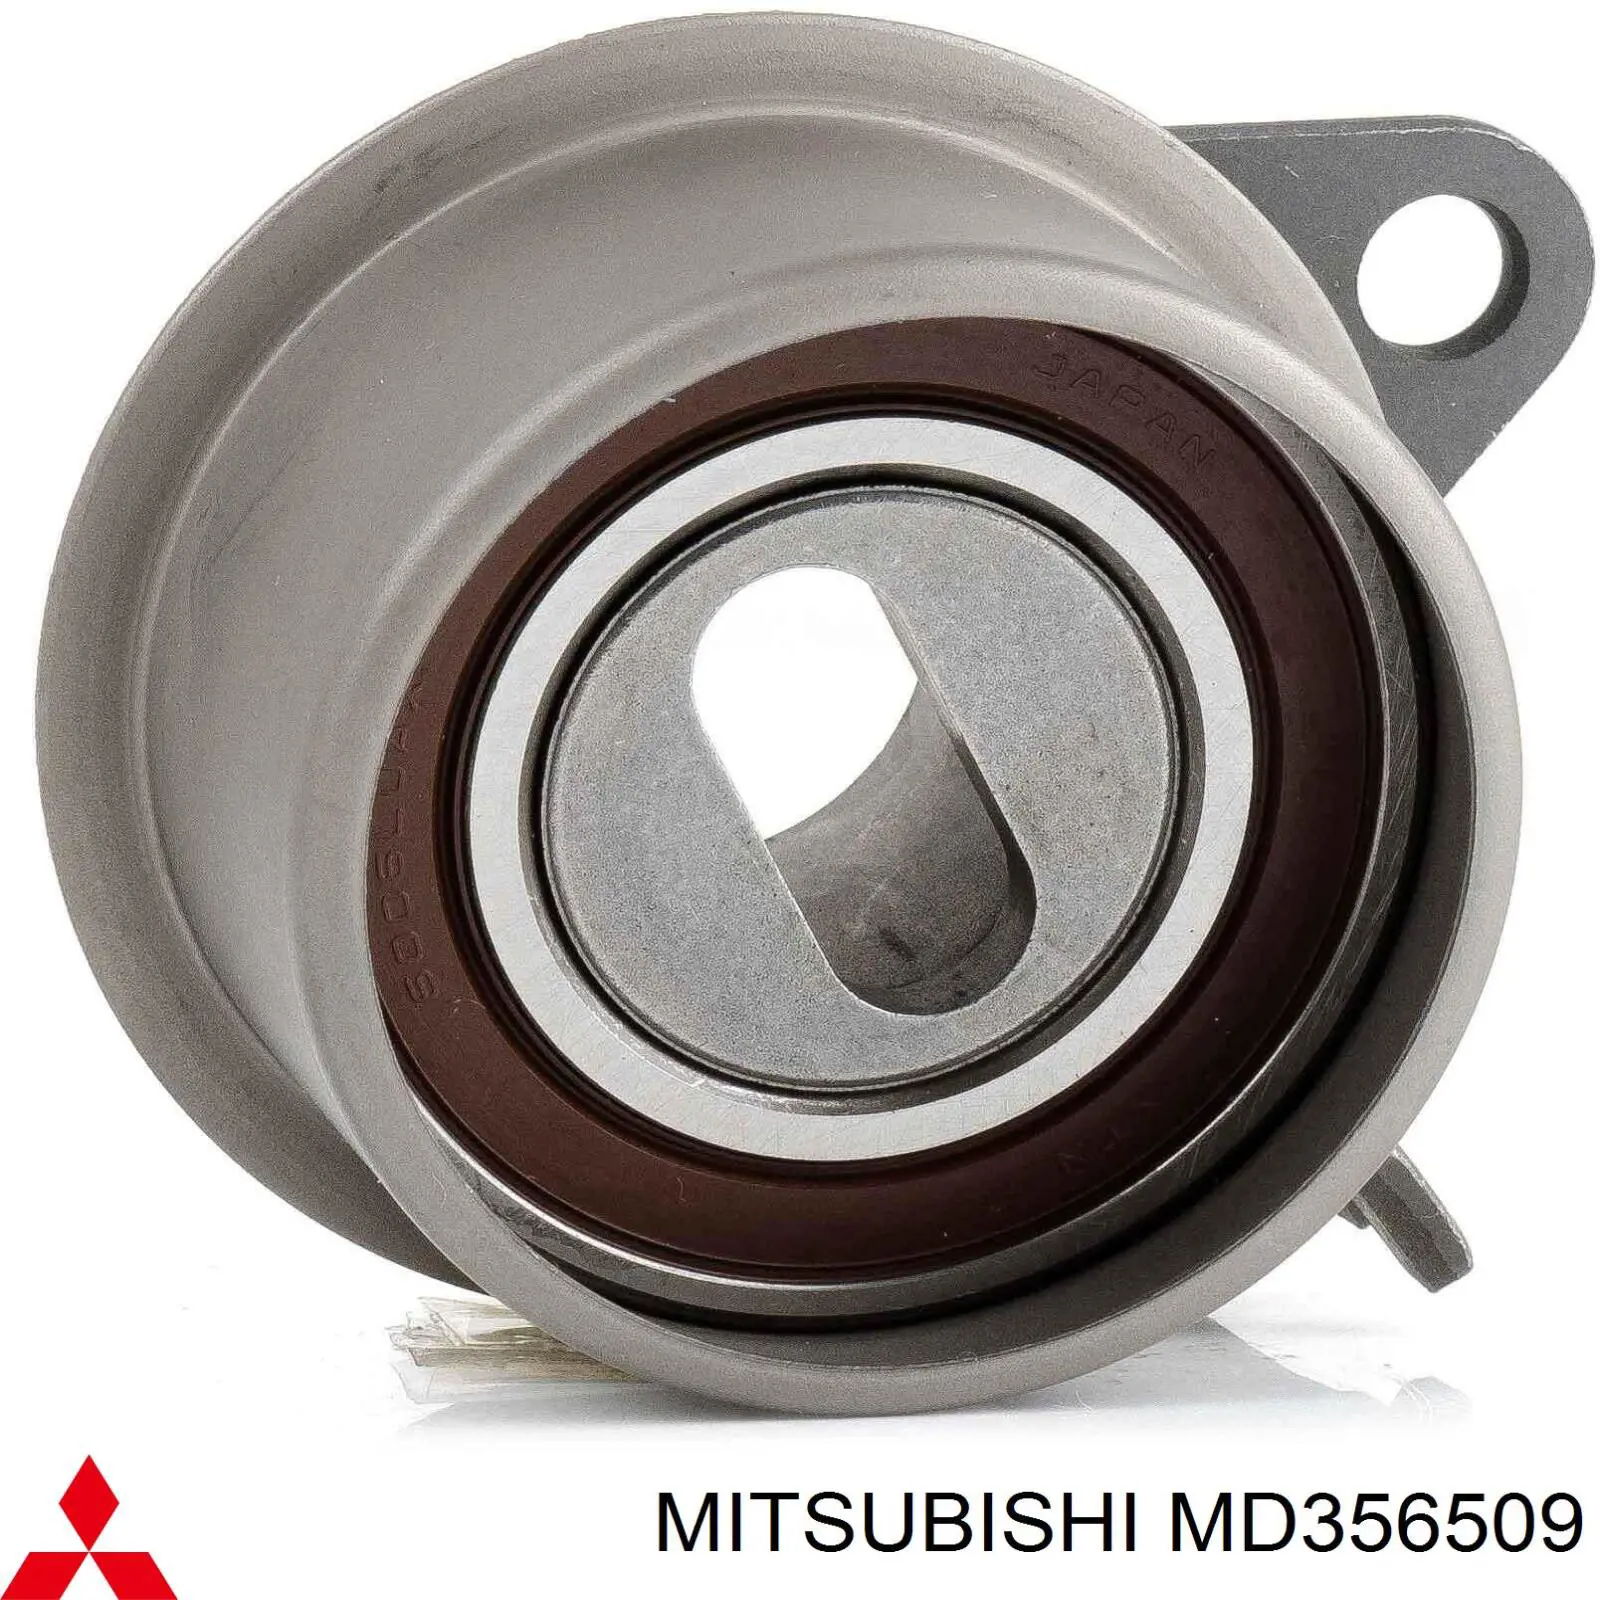 MD356509 Mitsubishi tensor correa distribución